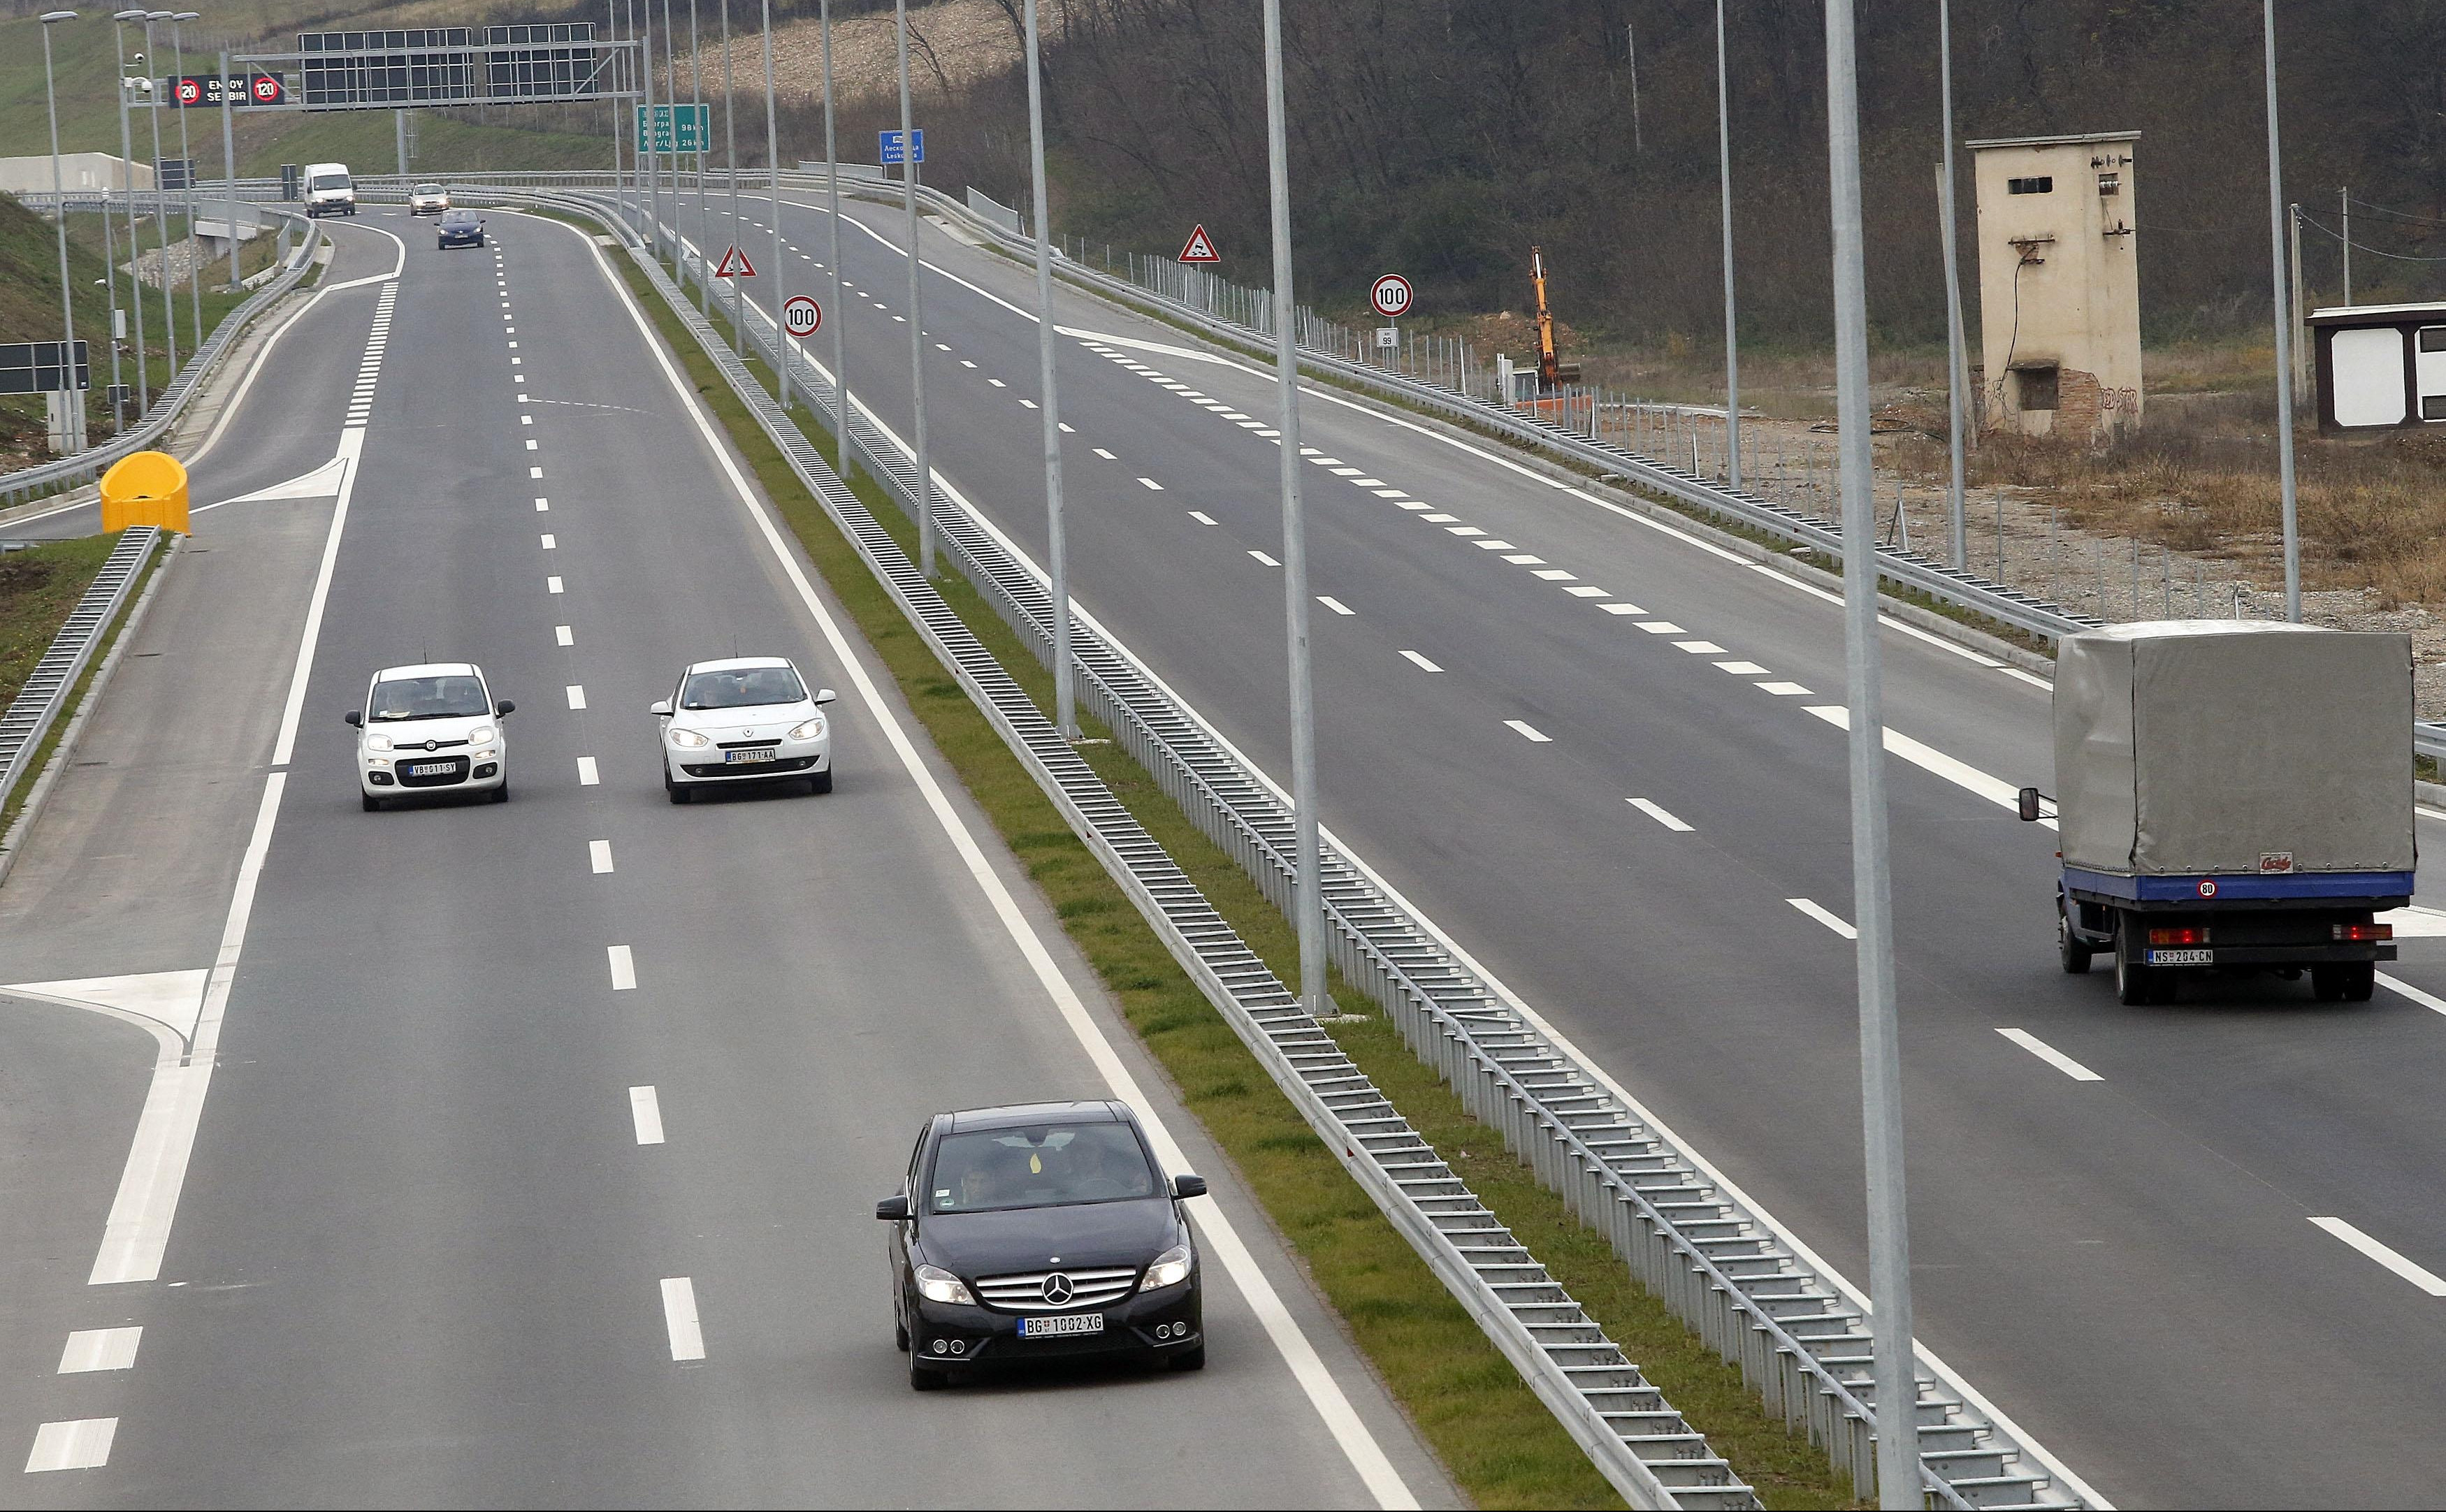 UPOZORENJE ZA VOZAČE: Budite POSEBNO OPREZNI, prilagodite brzinu uslovima na putu! Očekuju se gužve na auto-putu Niš-Beograd